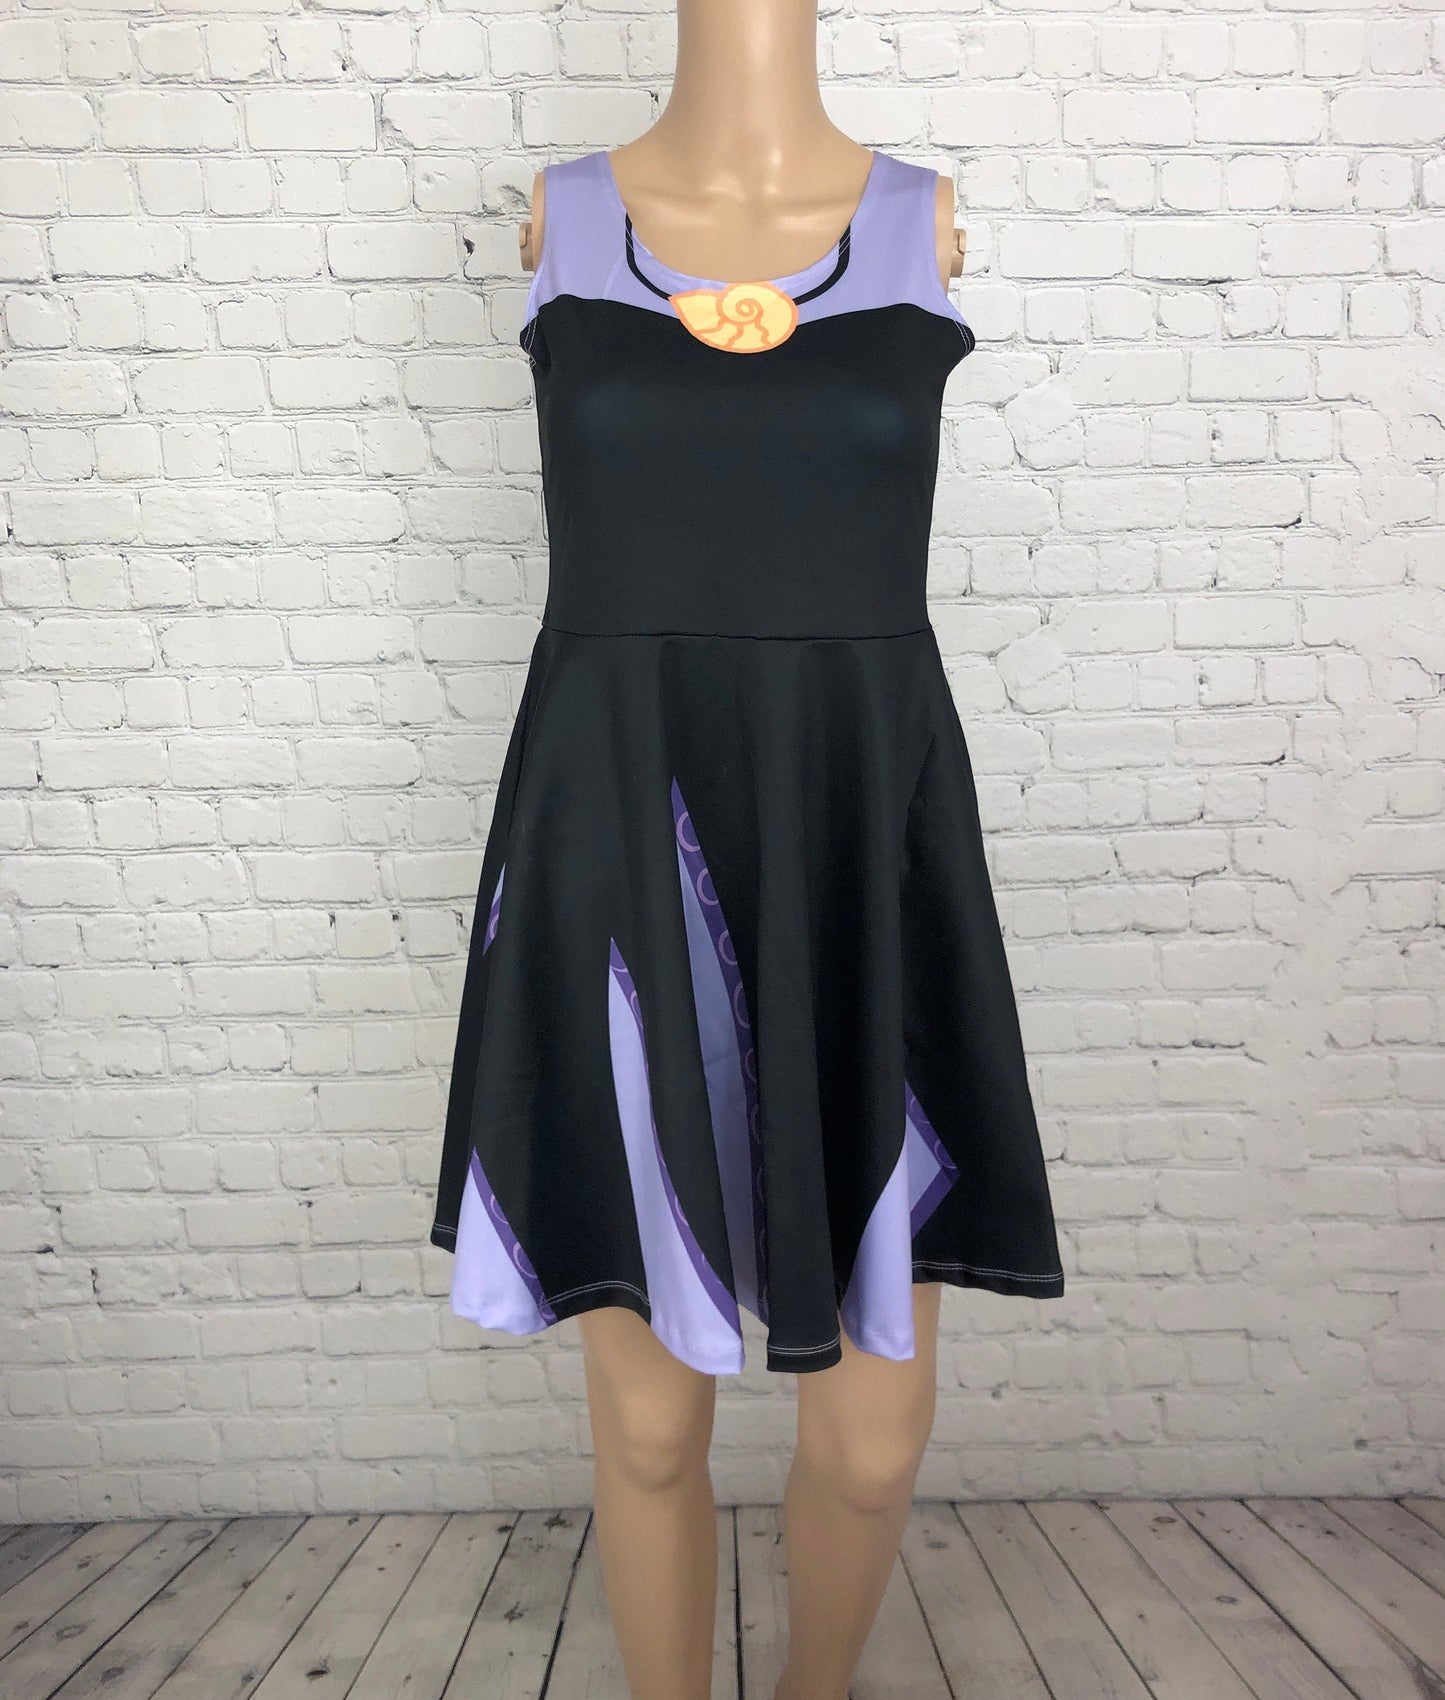 Ursula Little Mermaid Inspired Skater Dress